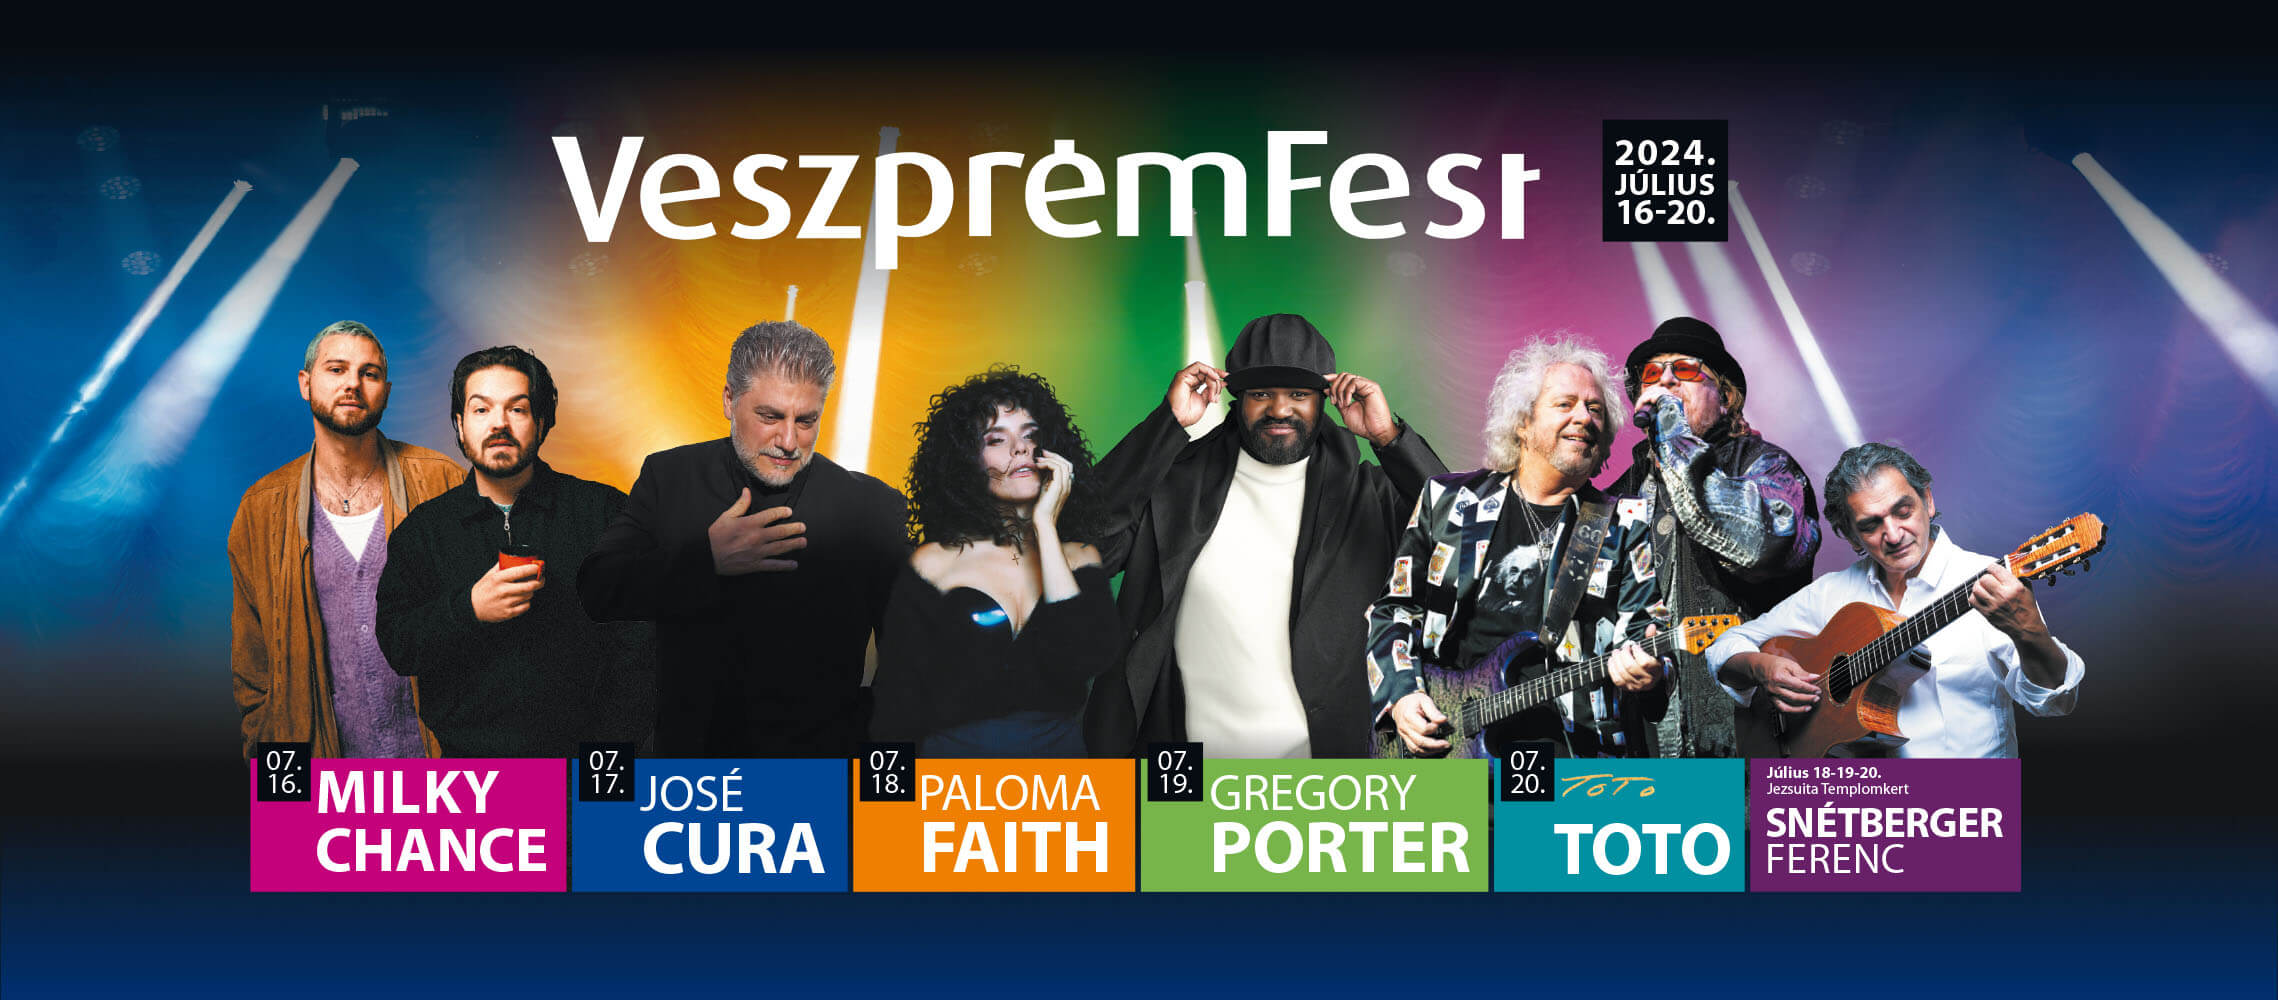 Veszprémfest, Veszprém Hungary, 16 - 20 July